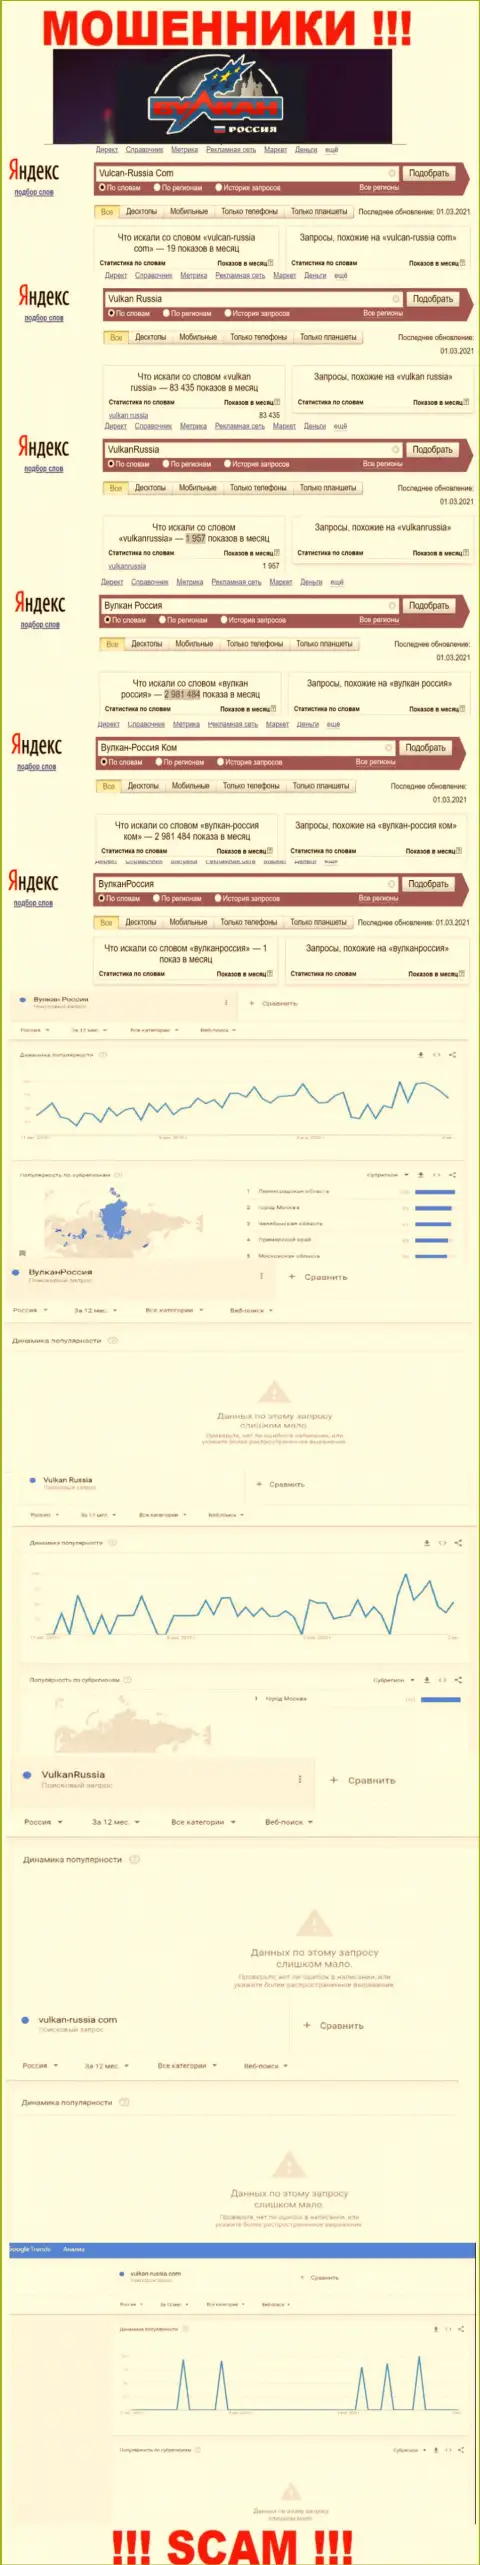 Статистические показатели числа обзоров информации о мошенниках Вулкан Россия в сети Интернет